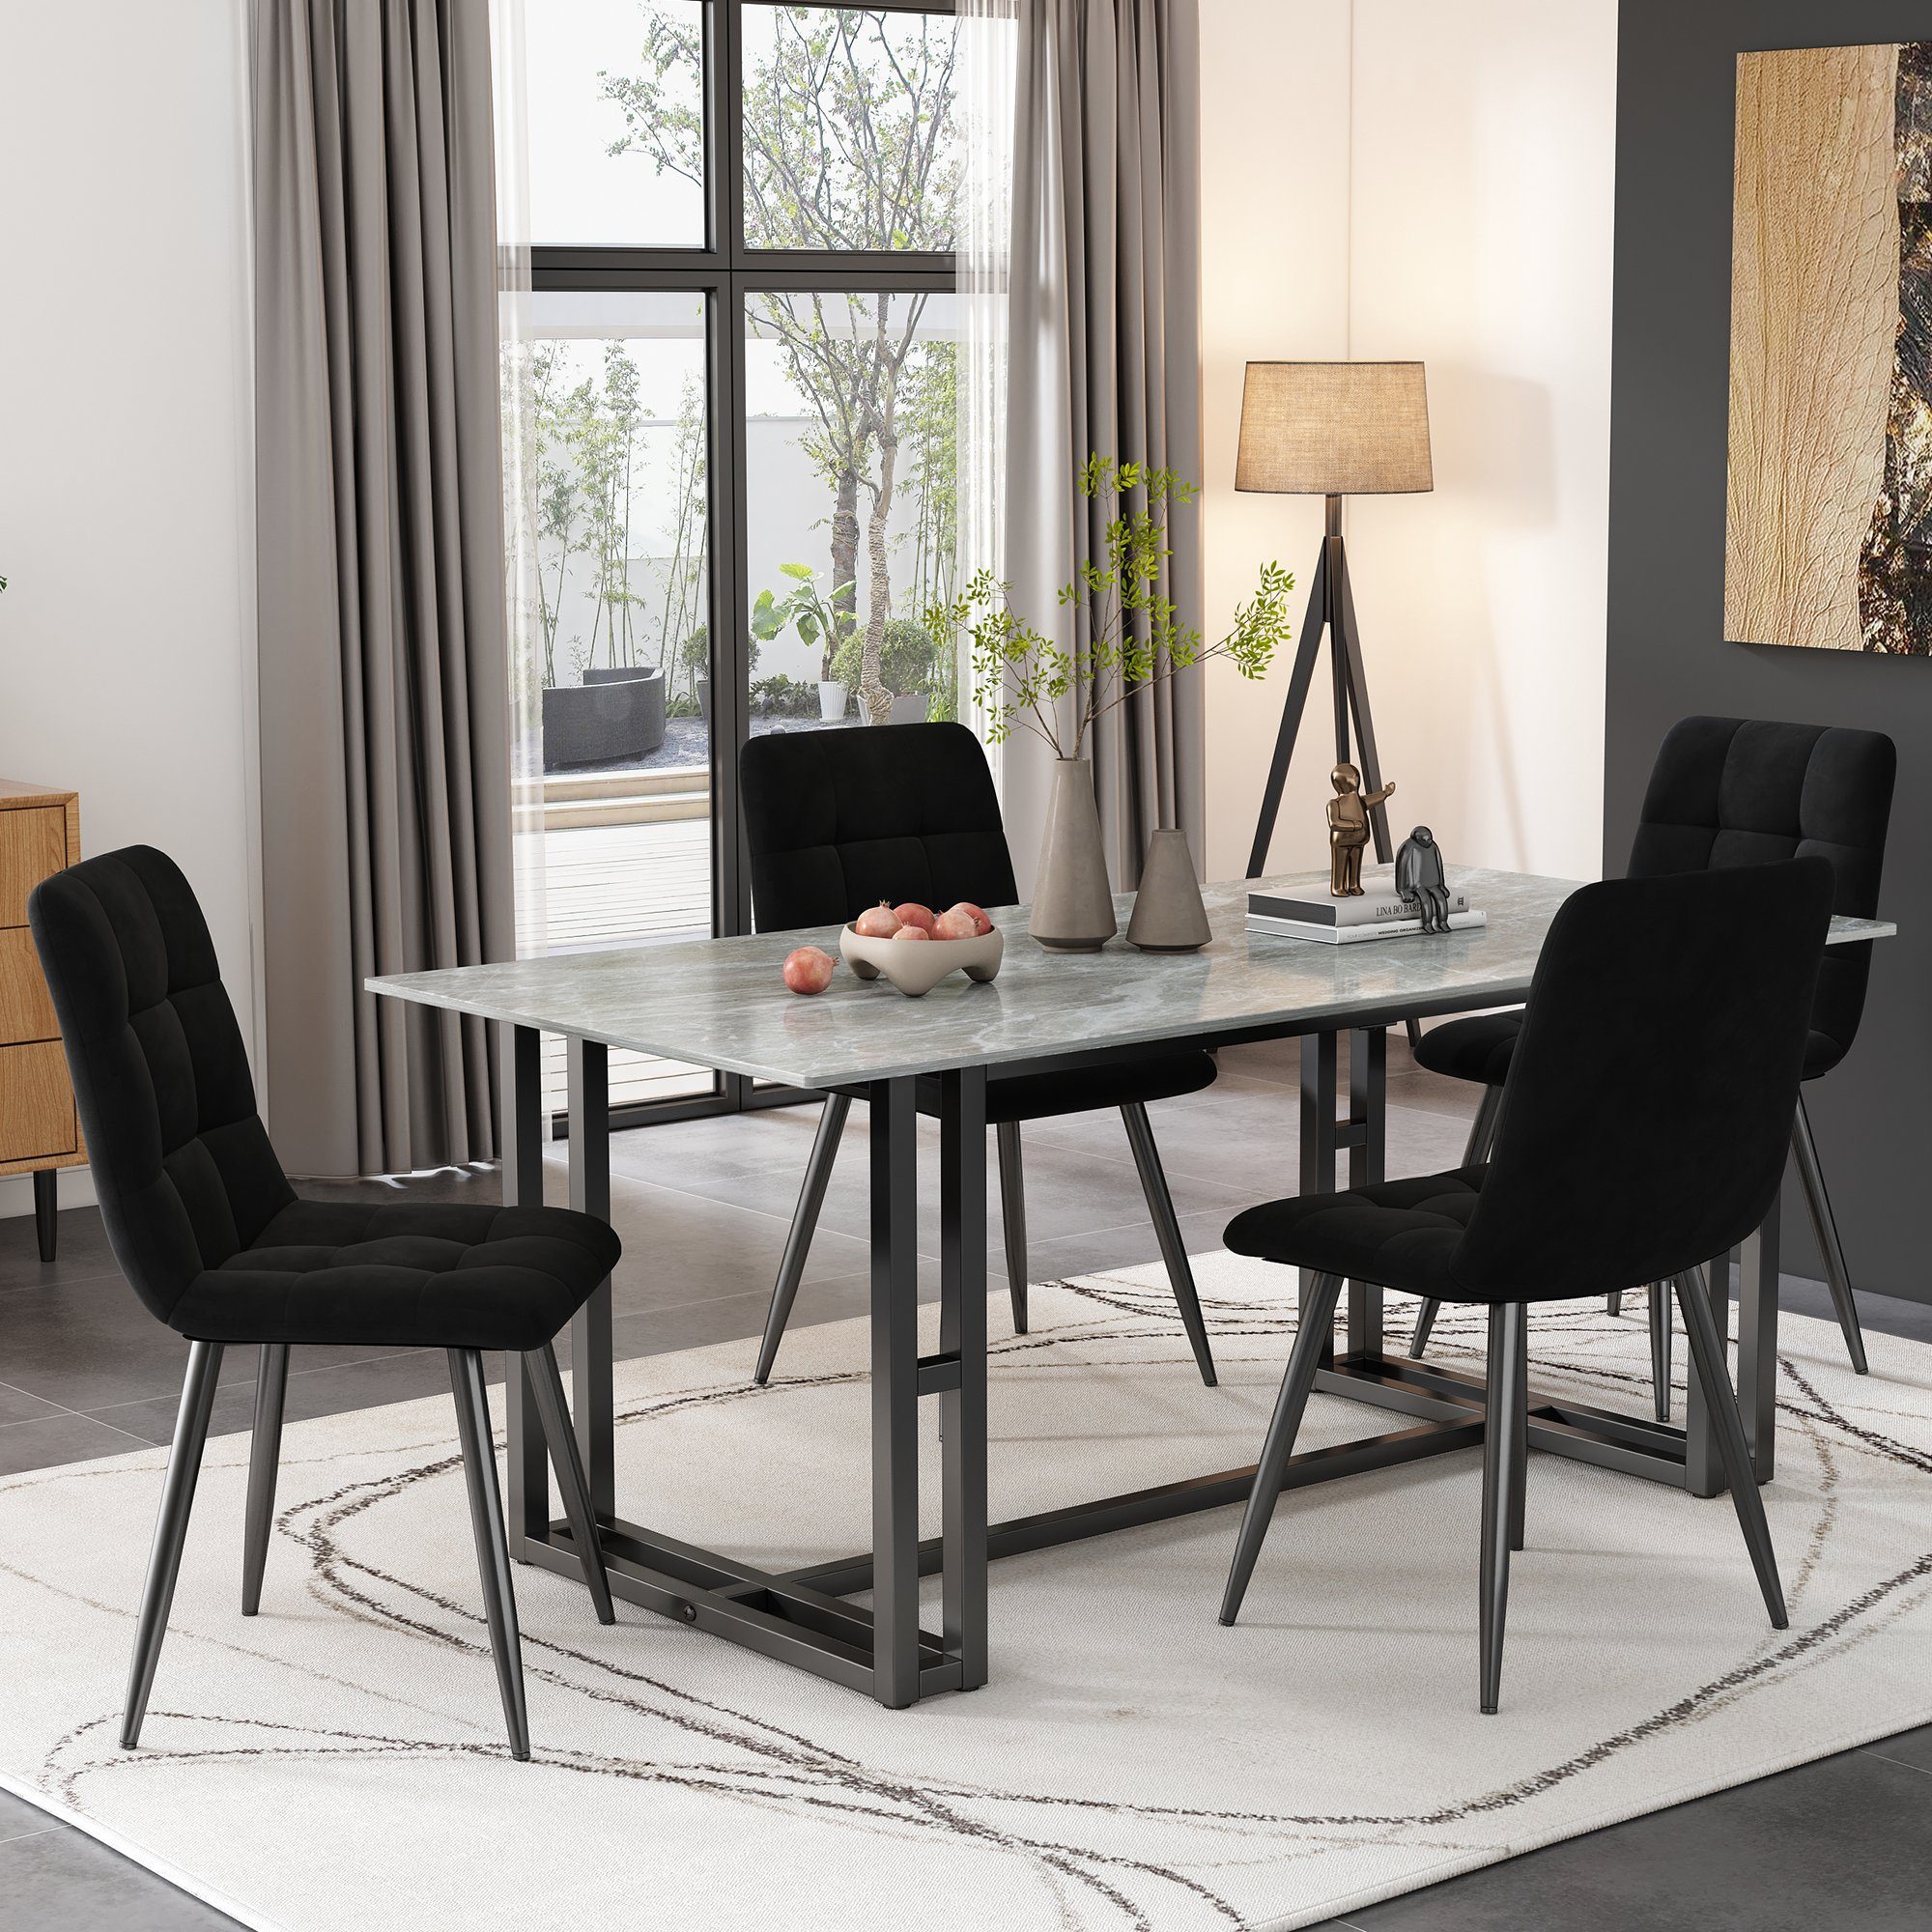 Sweiko Esszimmerstuhl (4er Set Küchenstuhl Wohnzimmerstuhl, 4 St),  Polsterstuhl mit Rückenlehne, Sitzfläche aus Samt, Gestell aus Metall